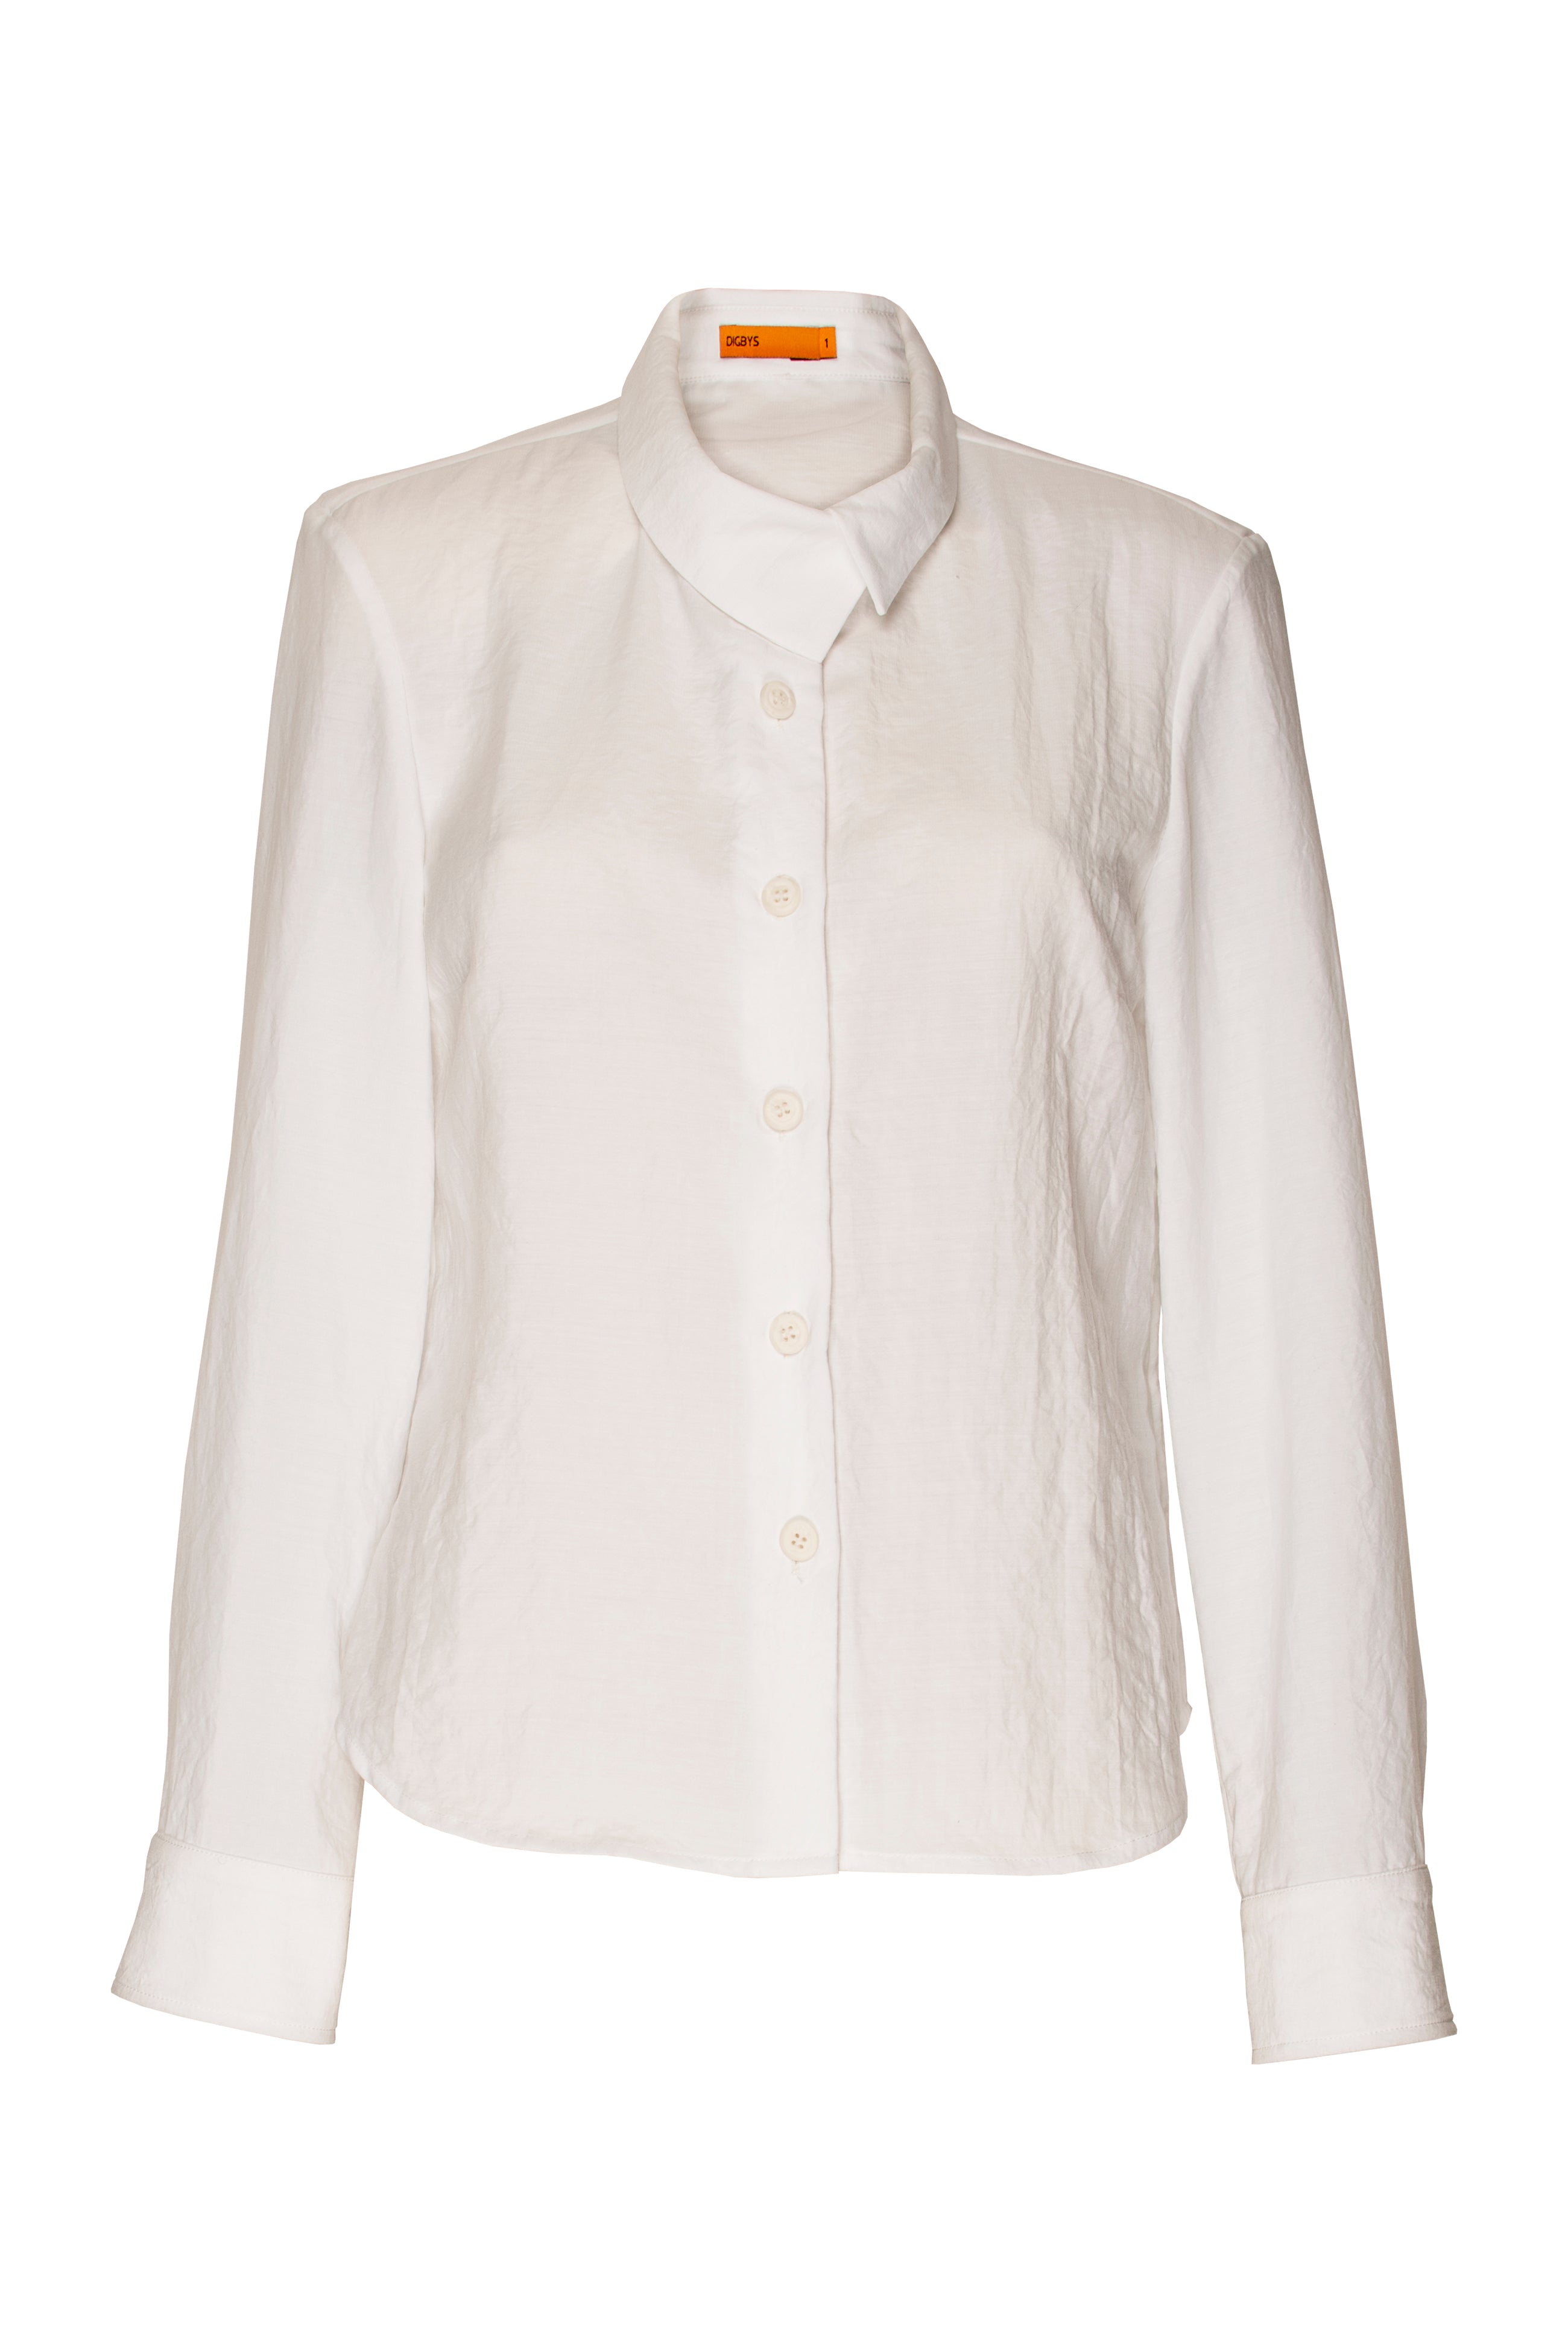 Cross Over Collar Shirt - White 6021